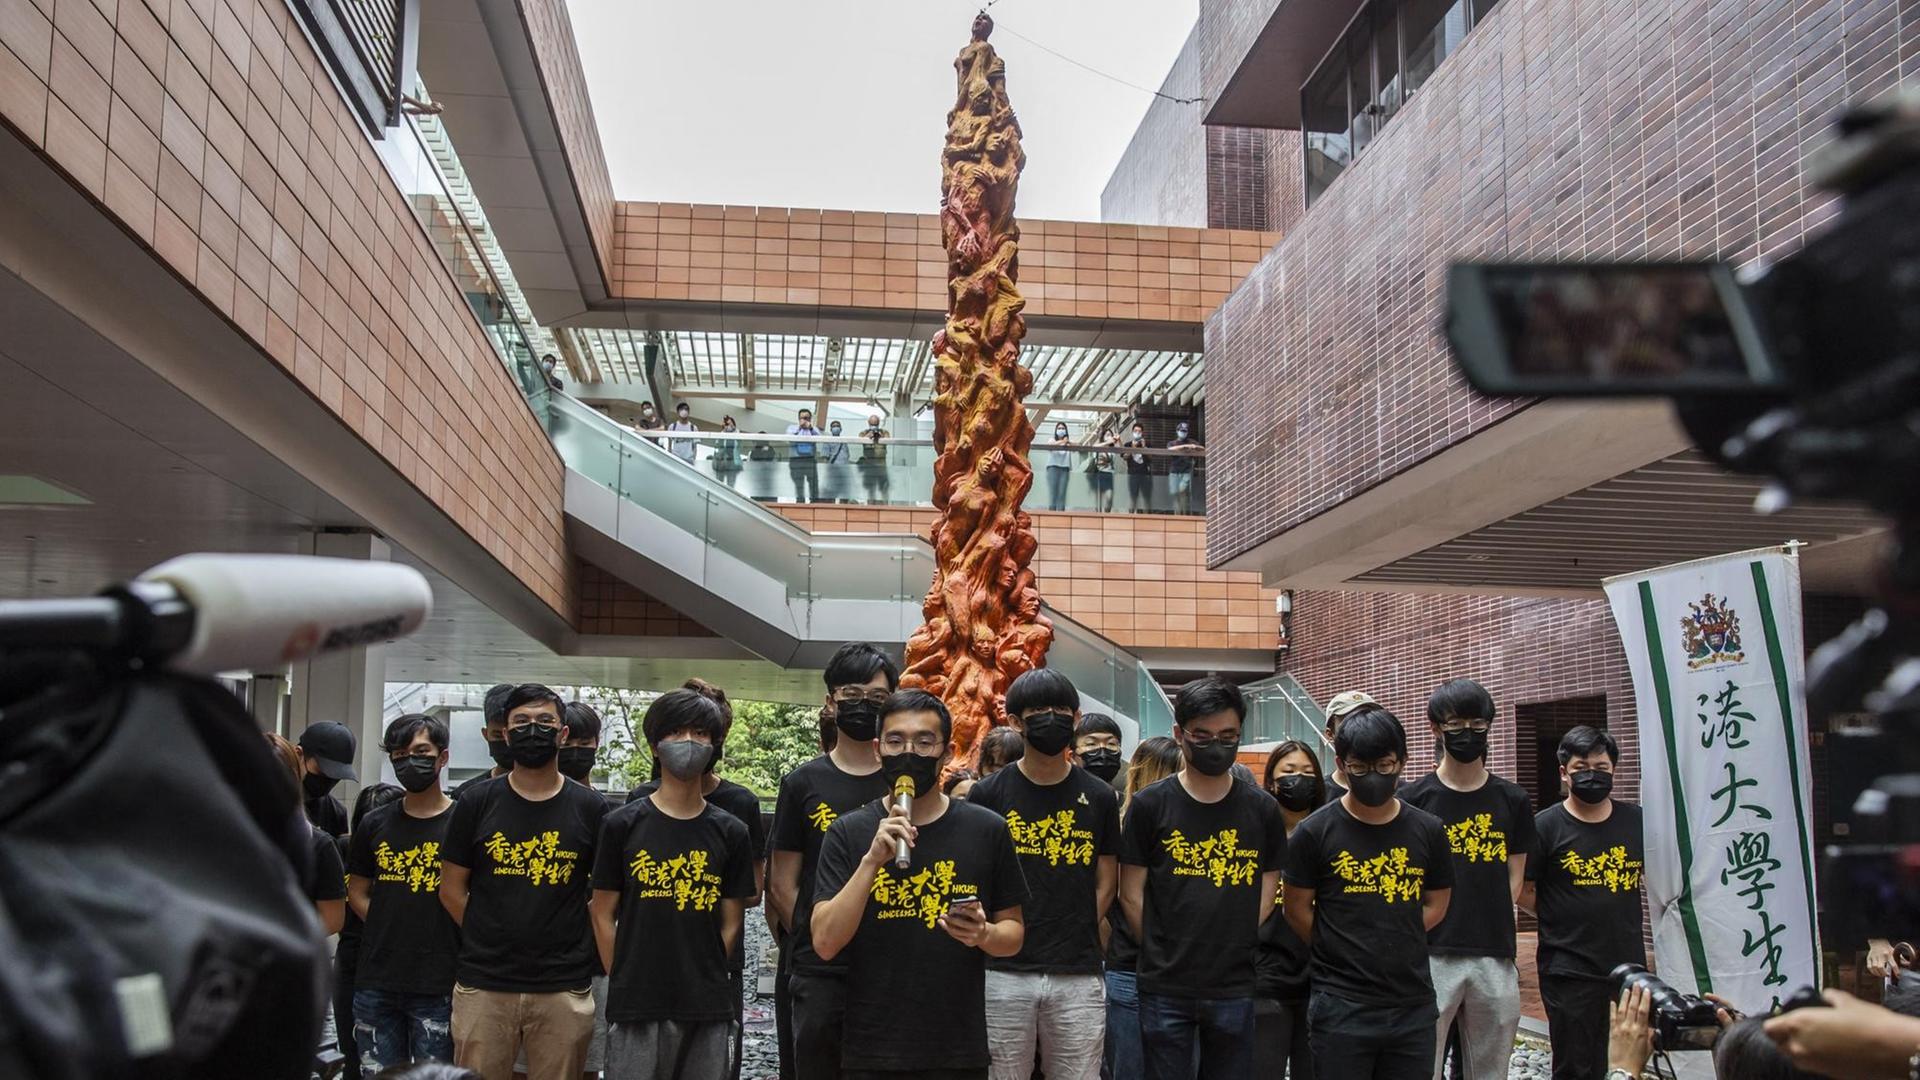 Studierende stehen vor der "Säule der Schande" auf dem Campus der Universität Hongkong. Sie erinnert an die blutige Niederschlagung der Demokratiebewegung in China 1989. Die Skulptur ist acht Meter hoch und zeigt geschundene menschliche Körper.